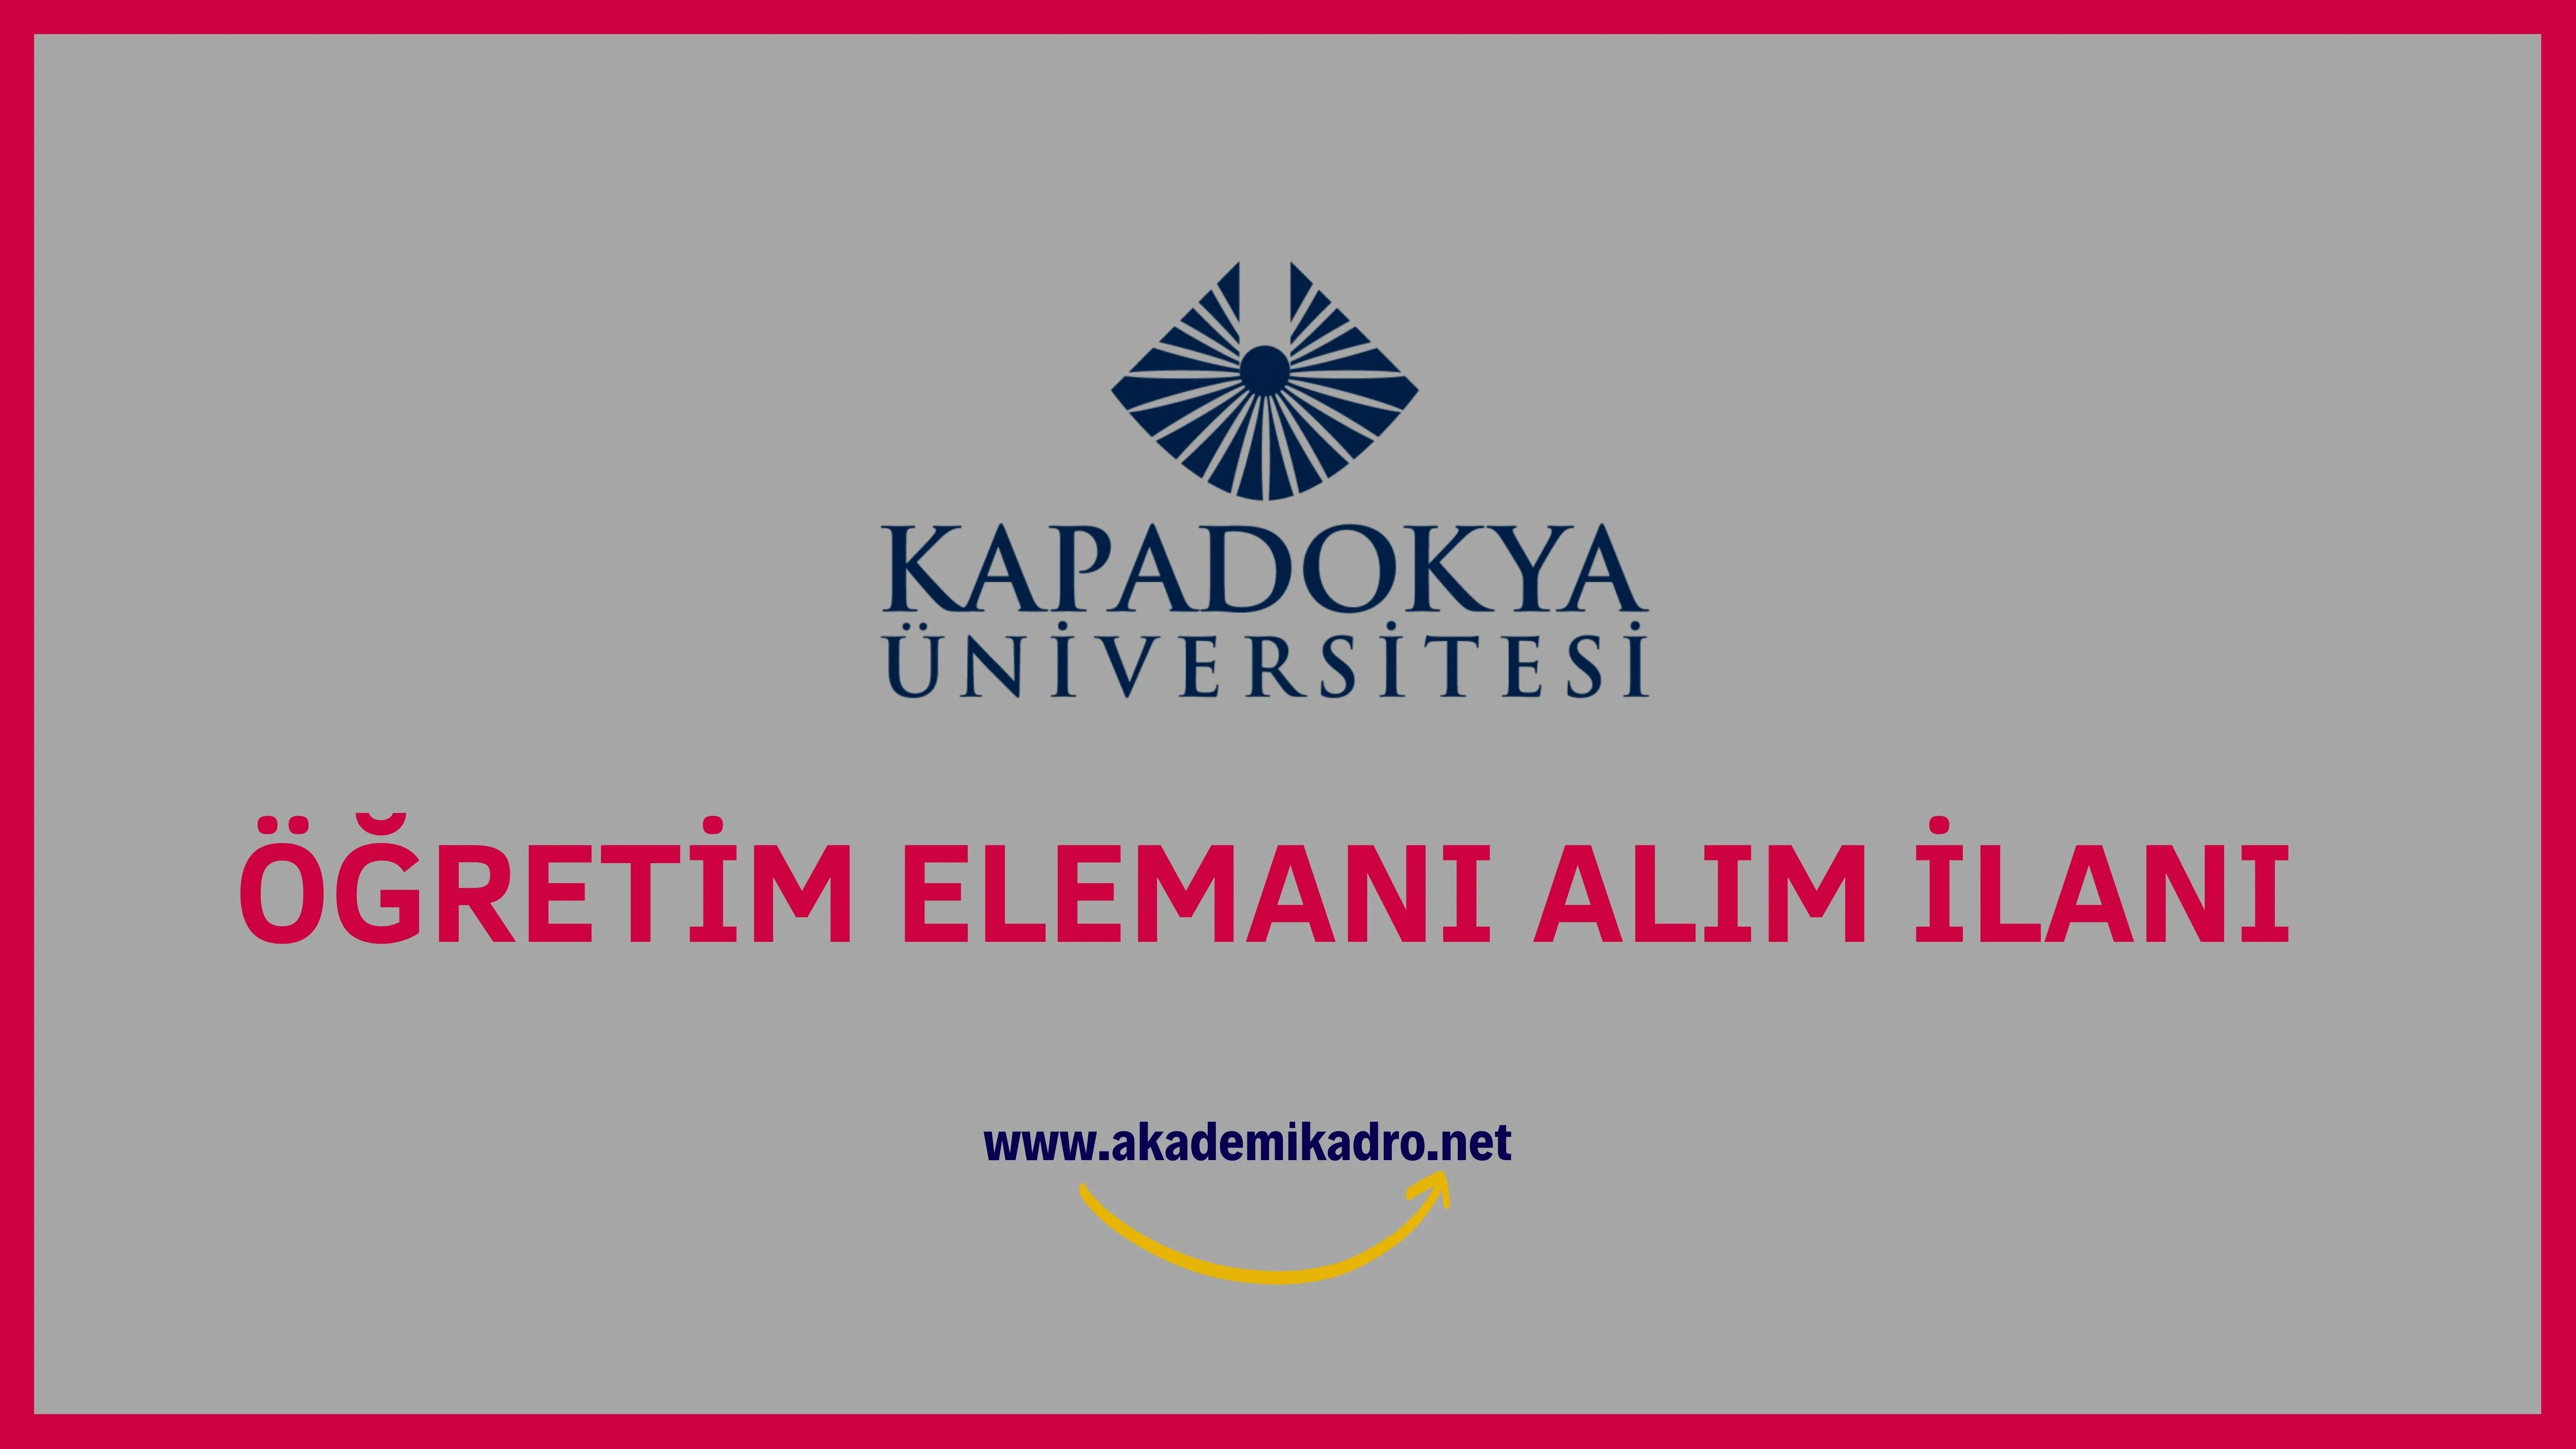 Kapadokya Üniversitesi 2 Araştırma görevlisi, 4 Öğretim görevlisi ve 4 Öğretim üyesi olmak üzere 10 Öğretim elemanı alacak.